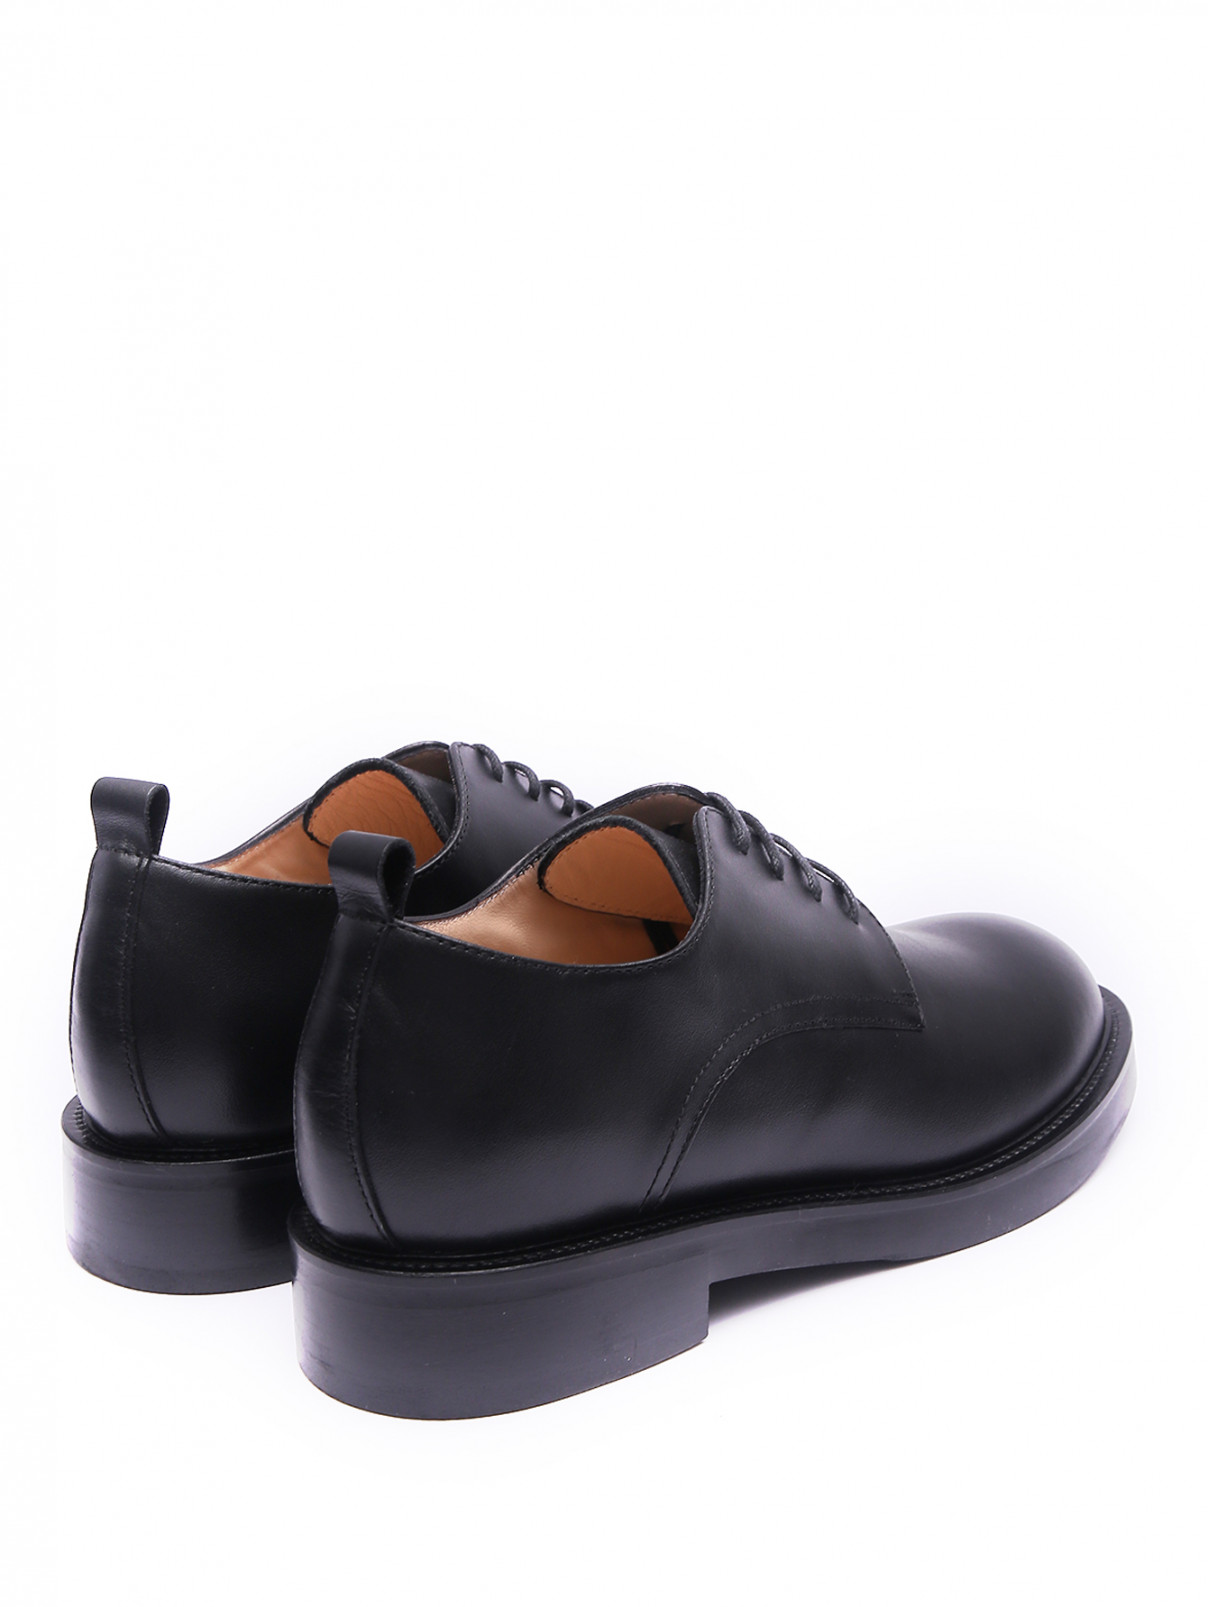 Ботинки из гладкой кожи на шнурках Marina Rinaldi  –  Обтравка2  – Цвет:  Черный